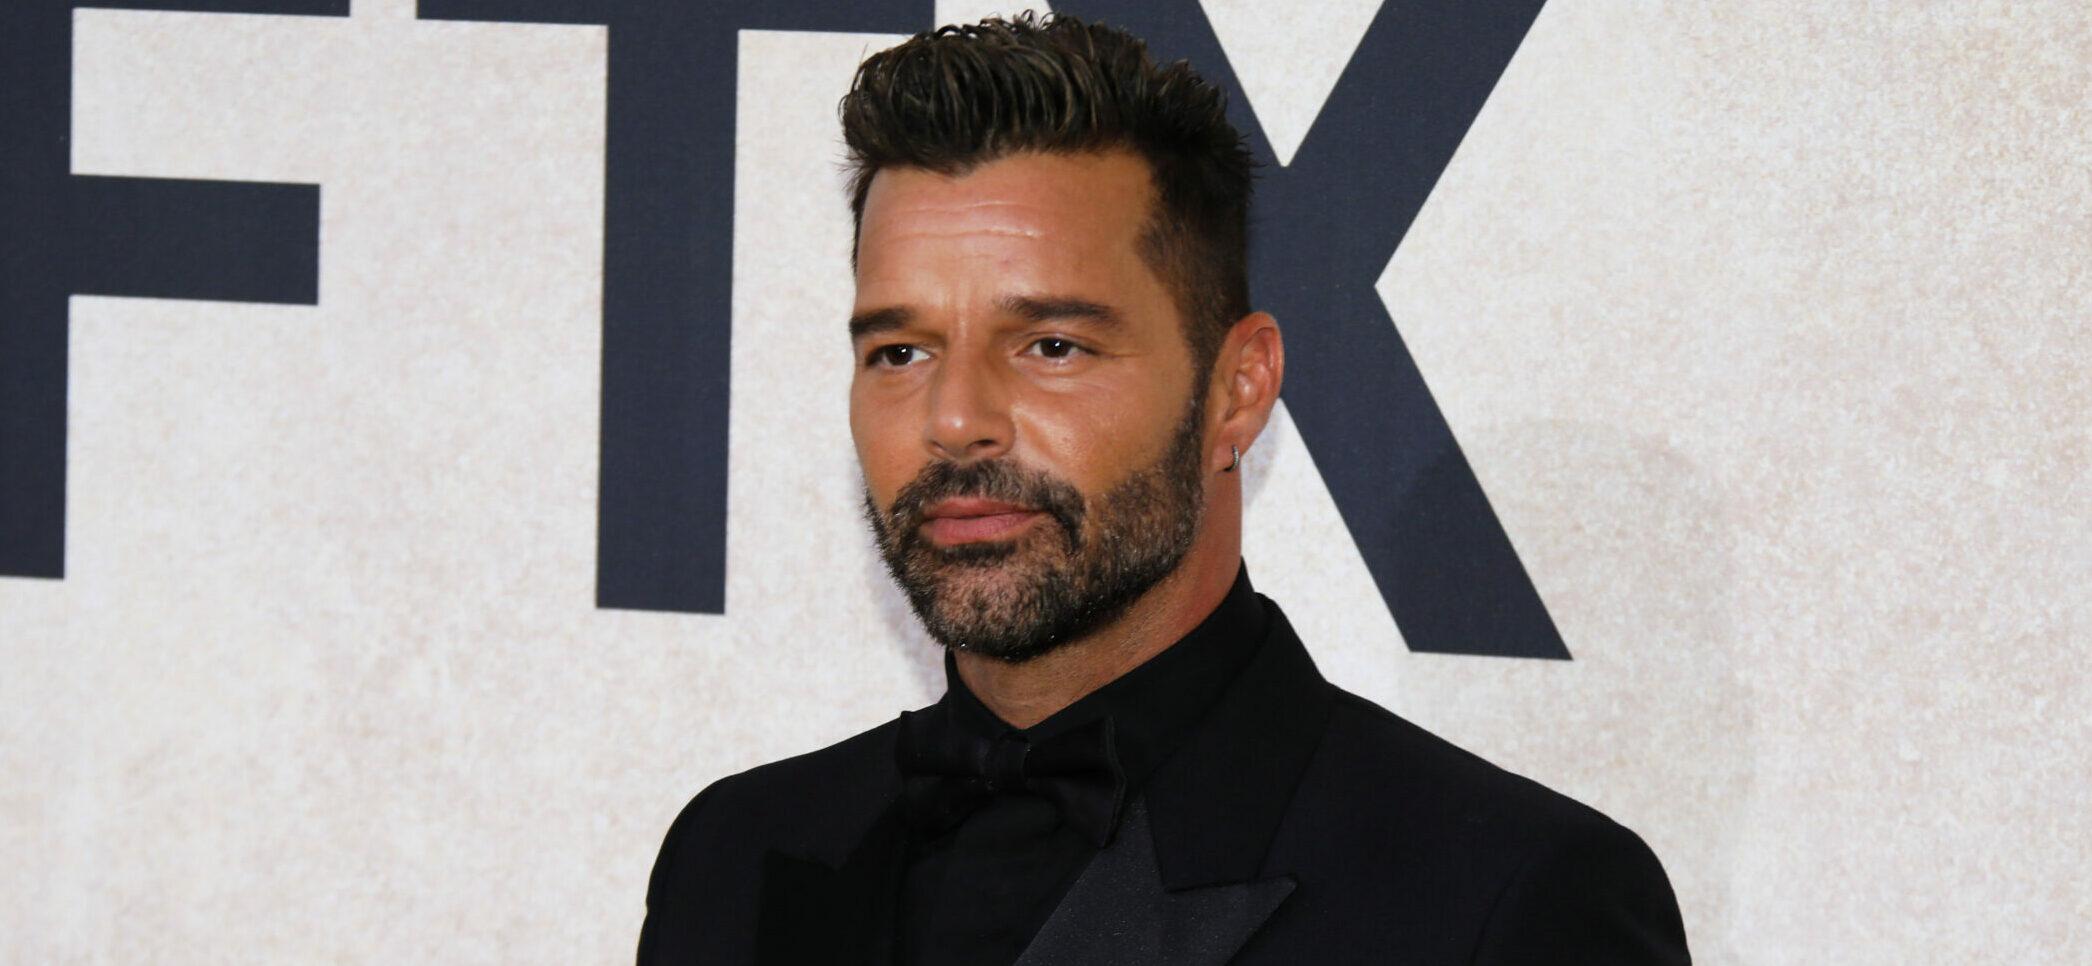 Ricky Martin at amfAR Gala Cannes 2022